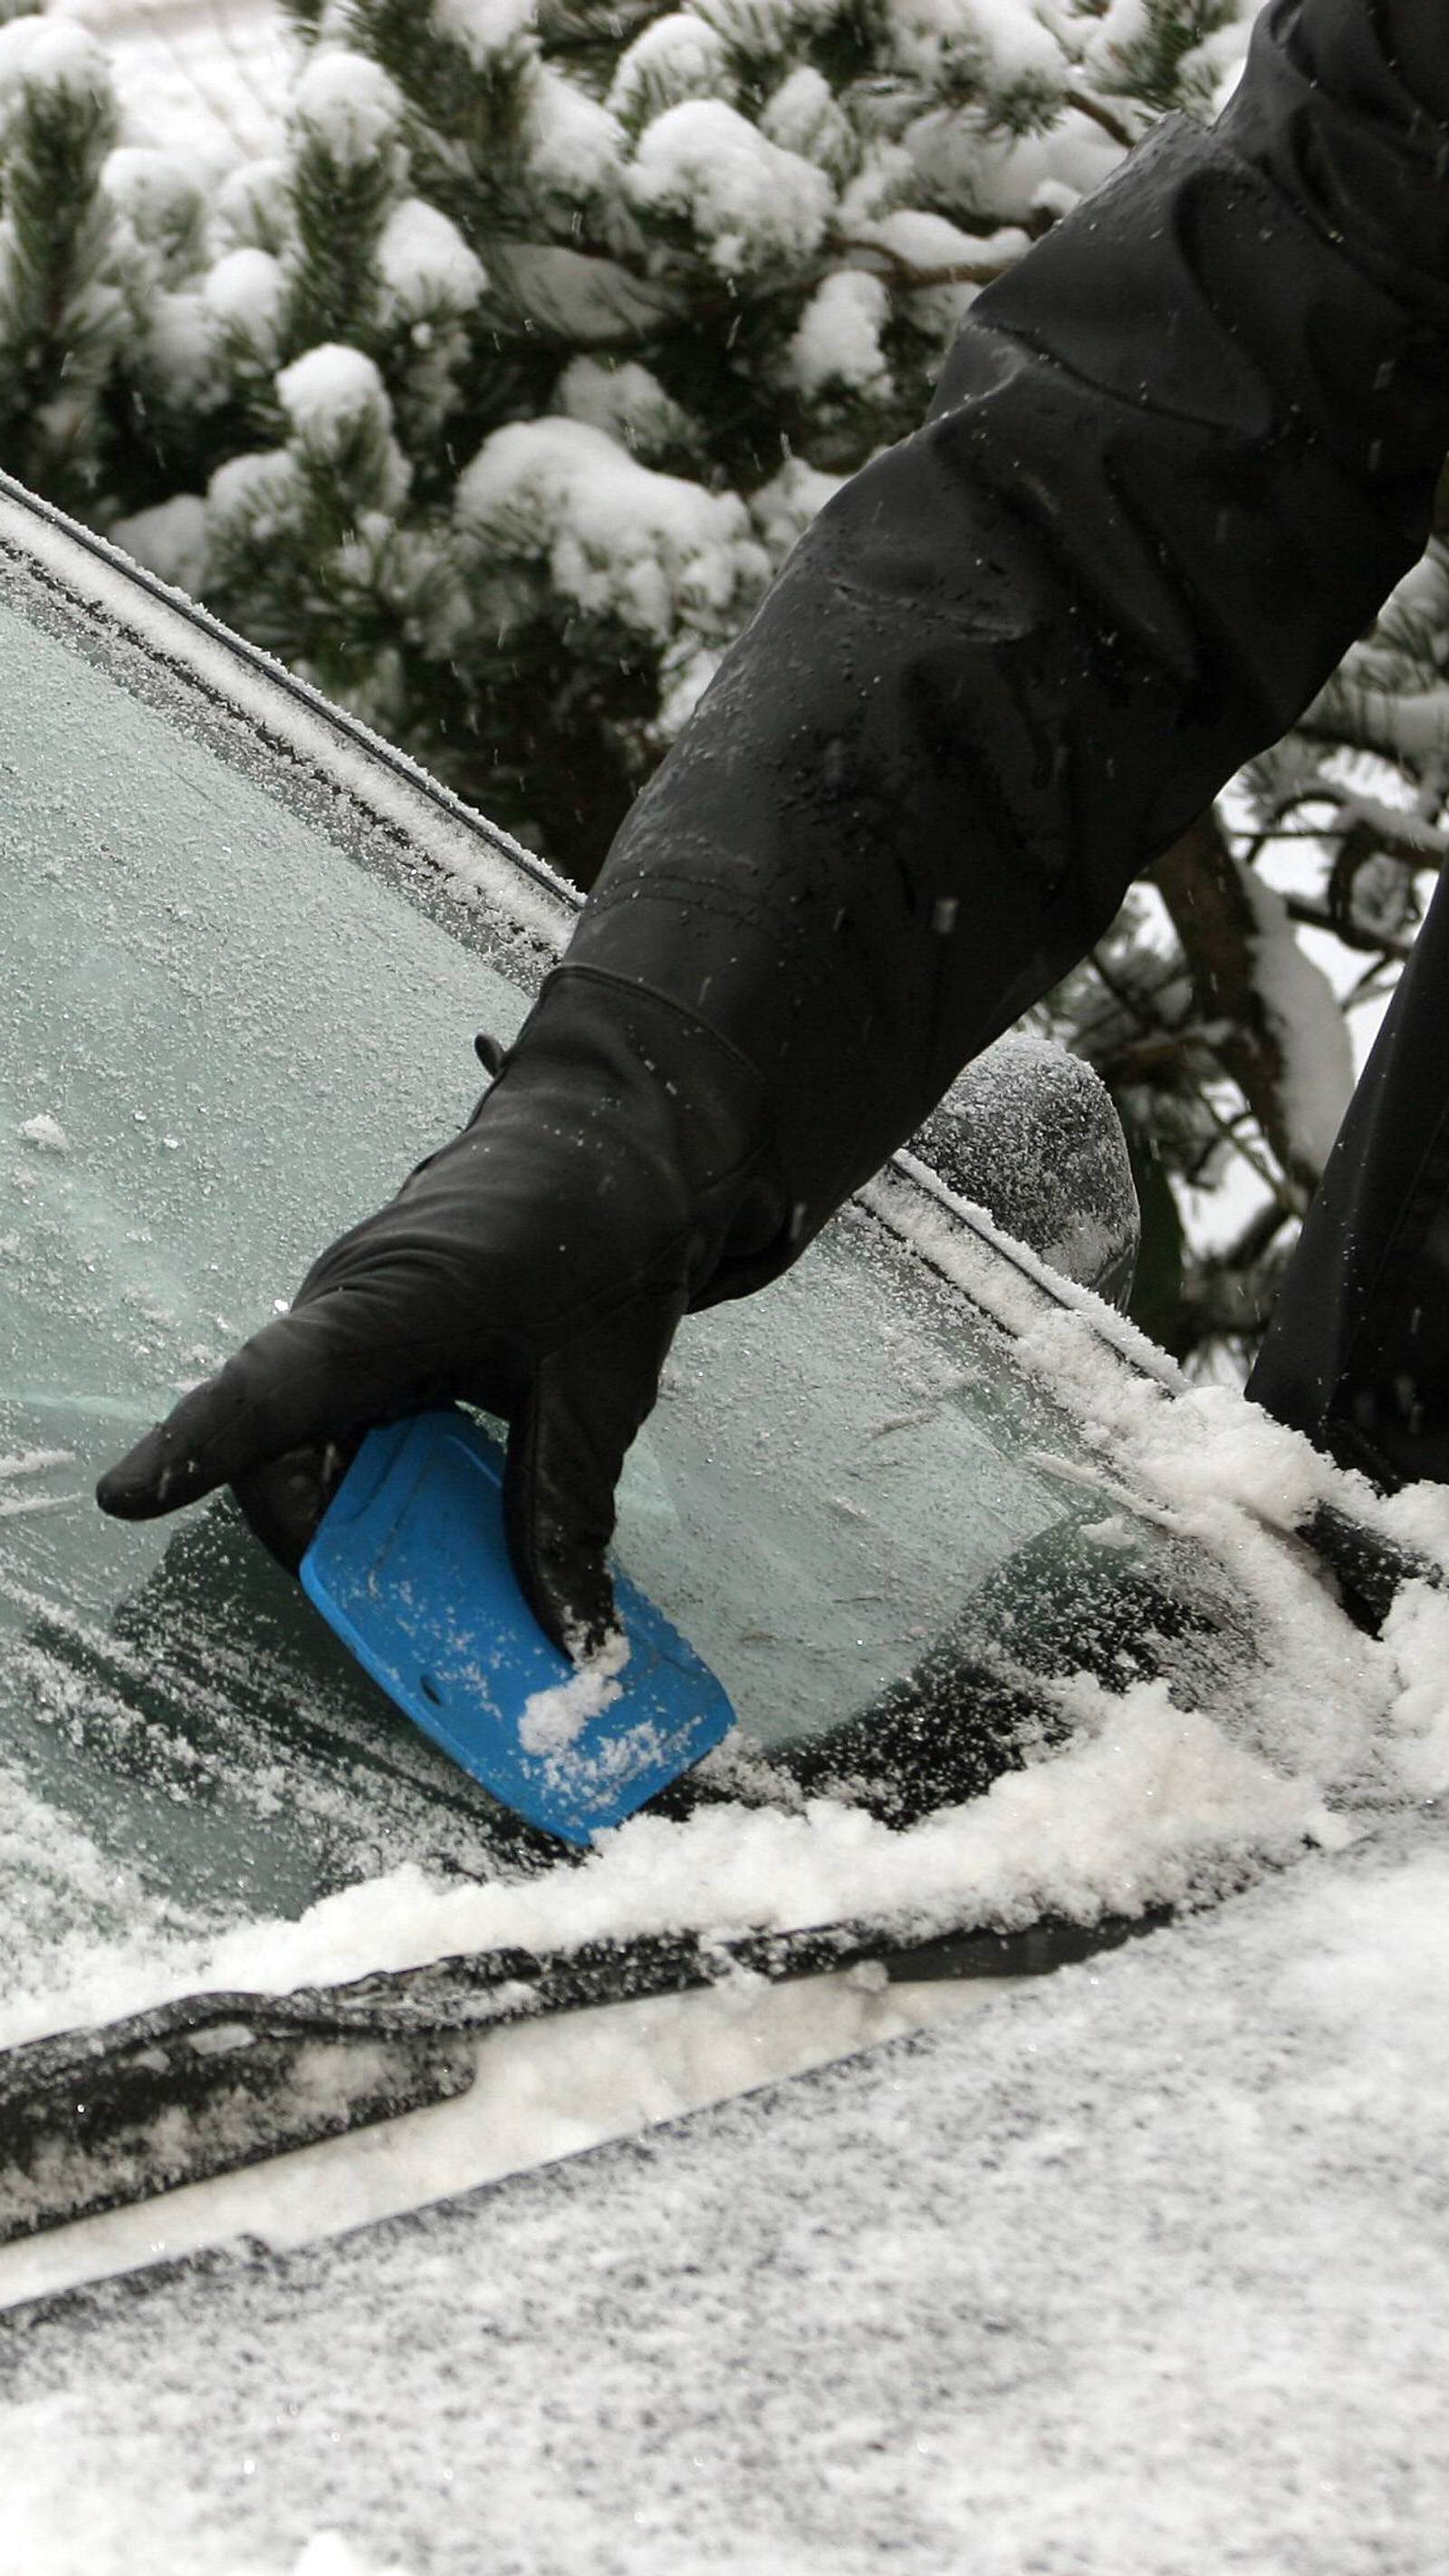 Eis von Autoscheibe kratzen - Wann im Winter hohe Bußgelder drohen